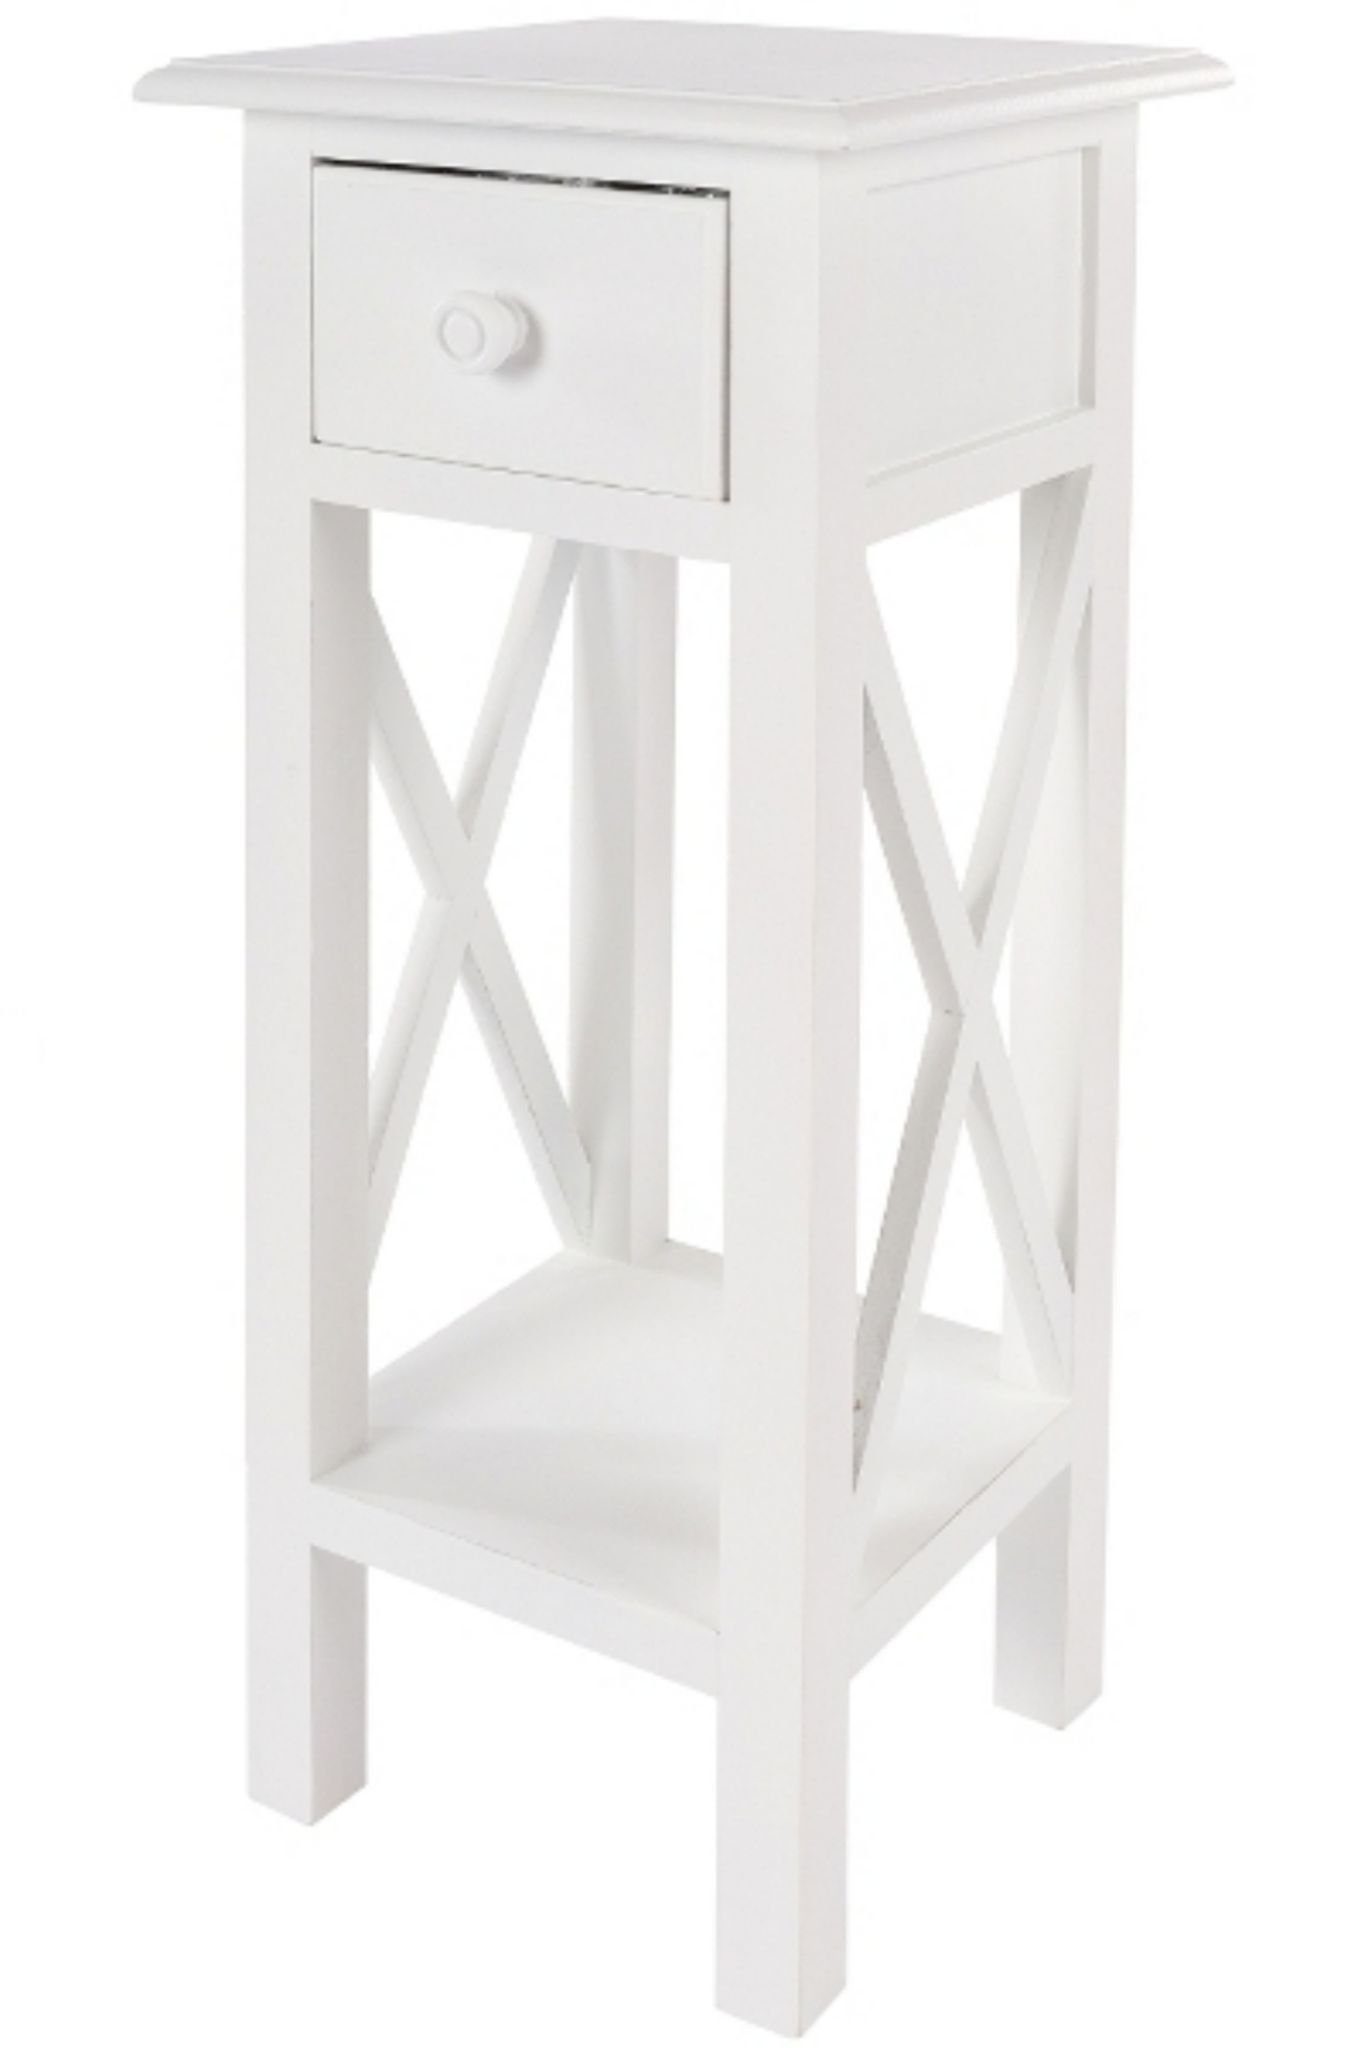 elbmöbel Telefontisch Telefontisch weiß Holz (FALSCH), Beistelltisch: Schublade 27x66x27 cm weiß Landhausstil